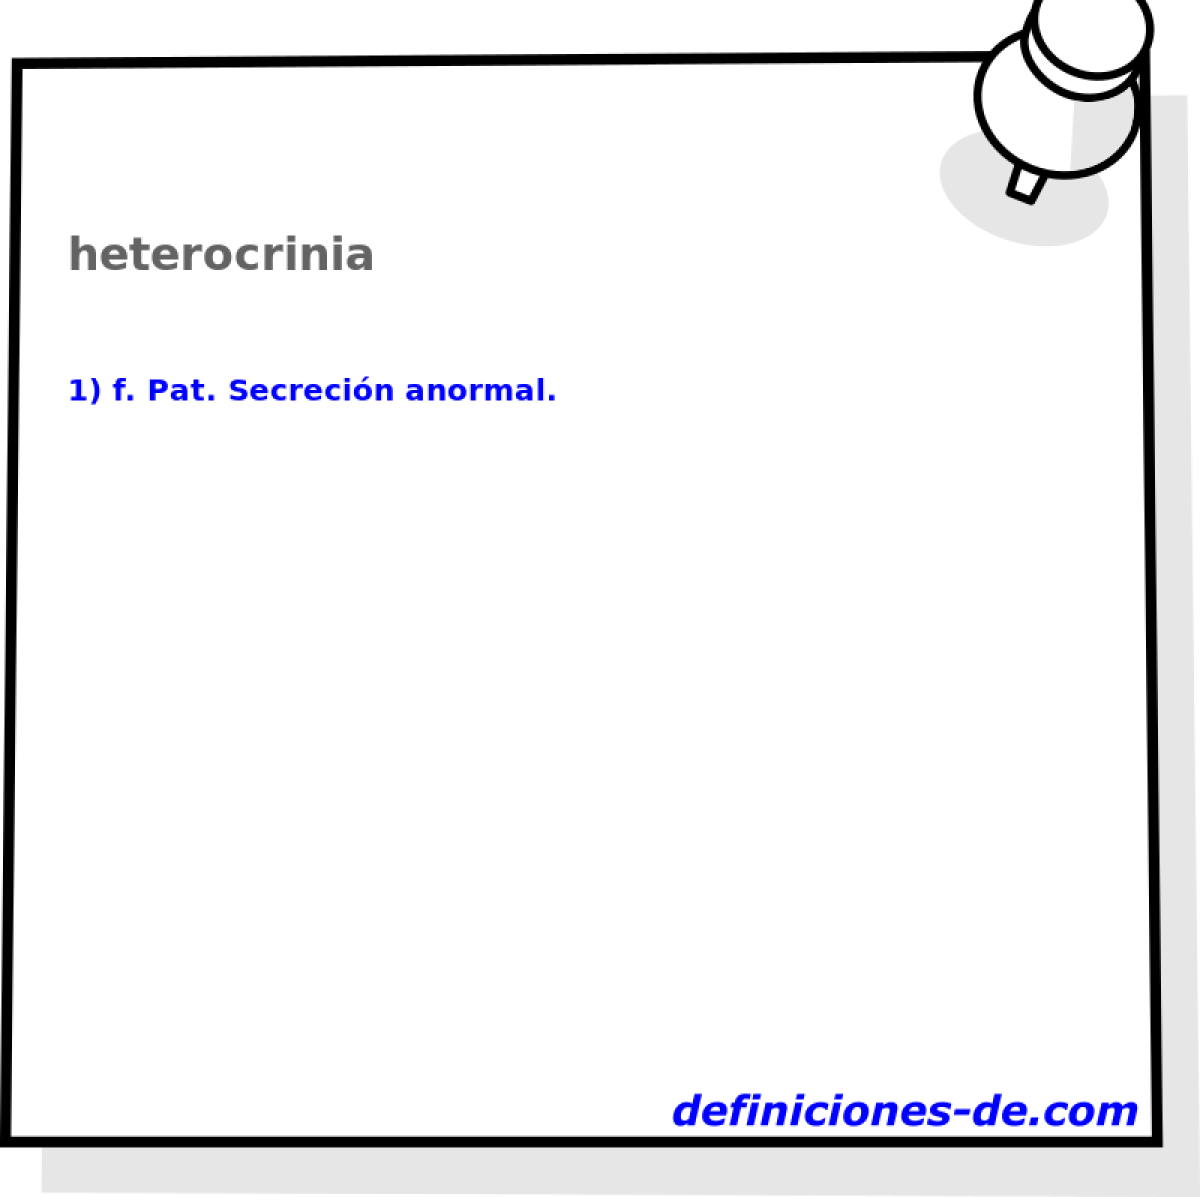 heterocrinia 